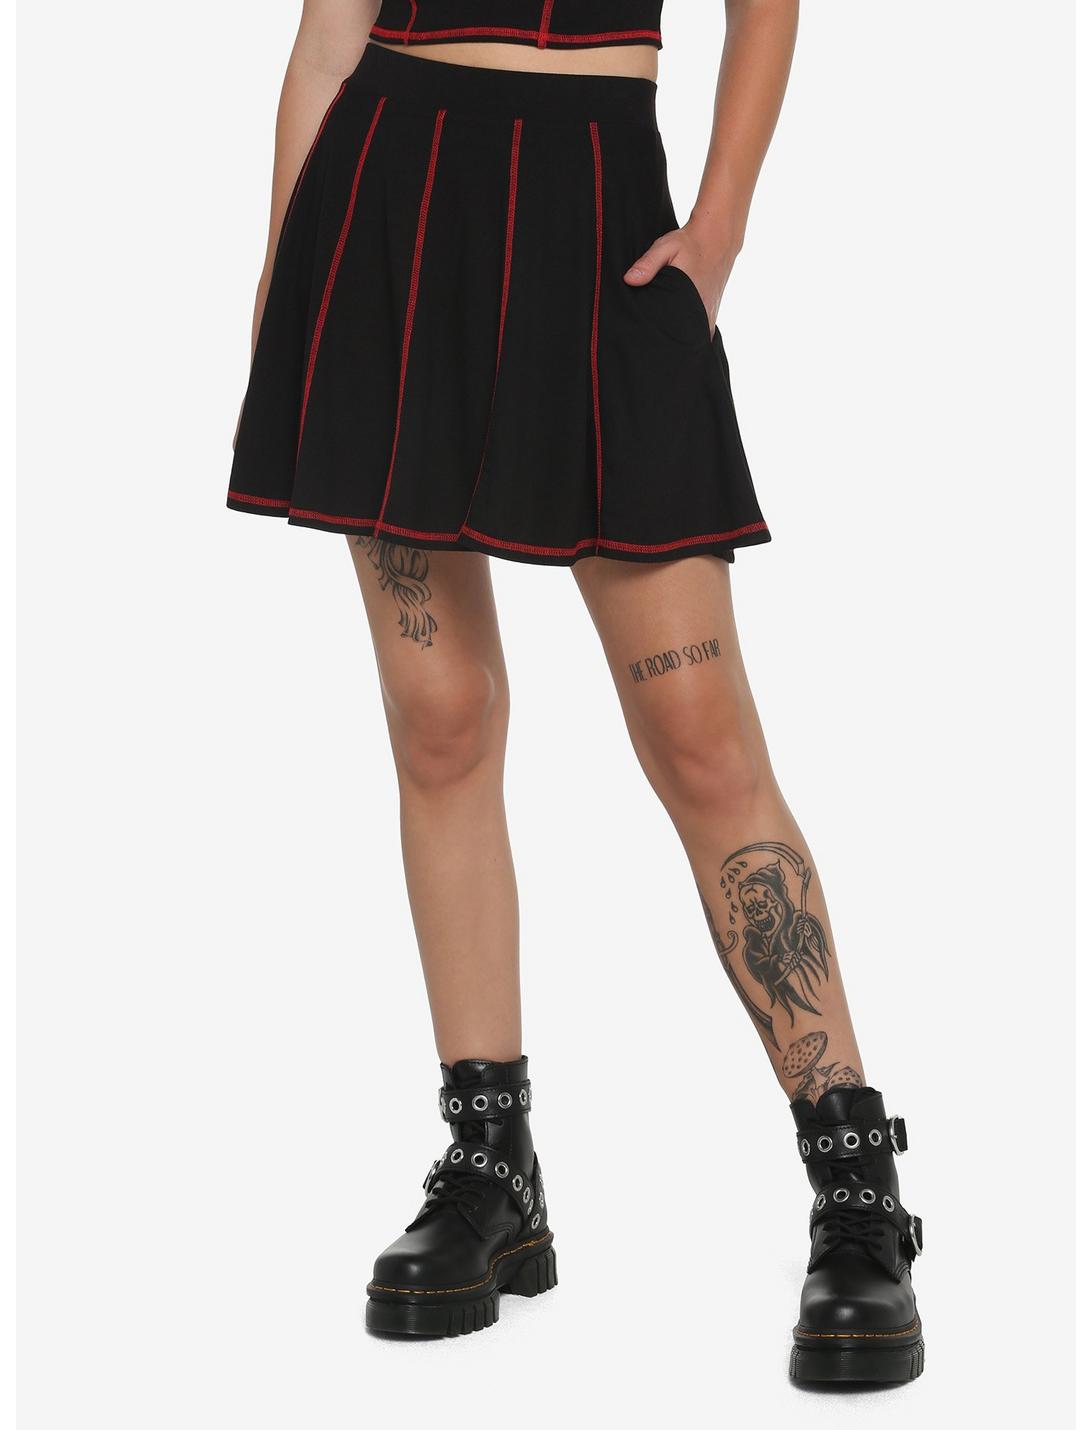 Black & Red Contrast Stitch Skirt, BLACK  RED, hi-res